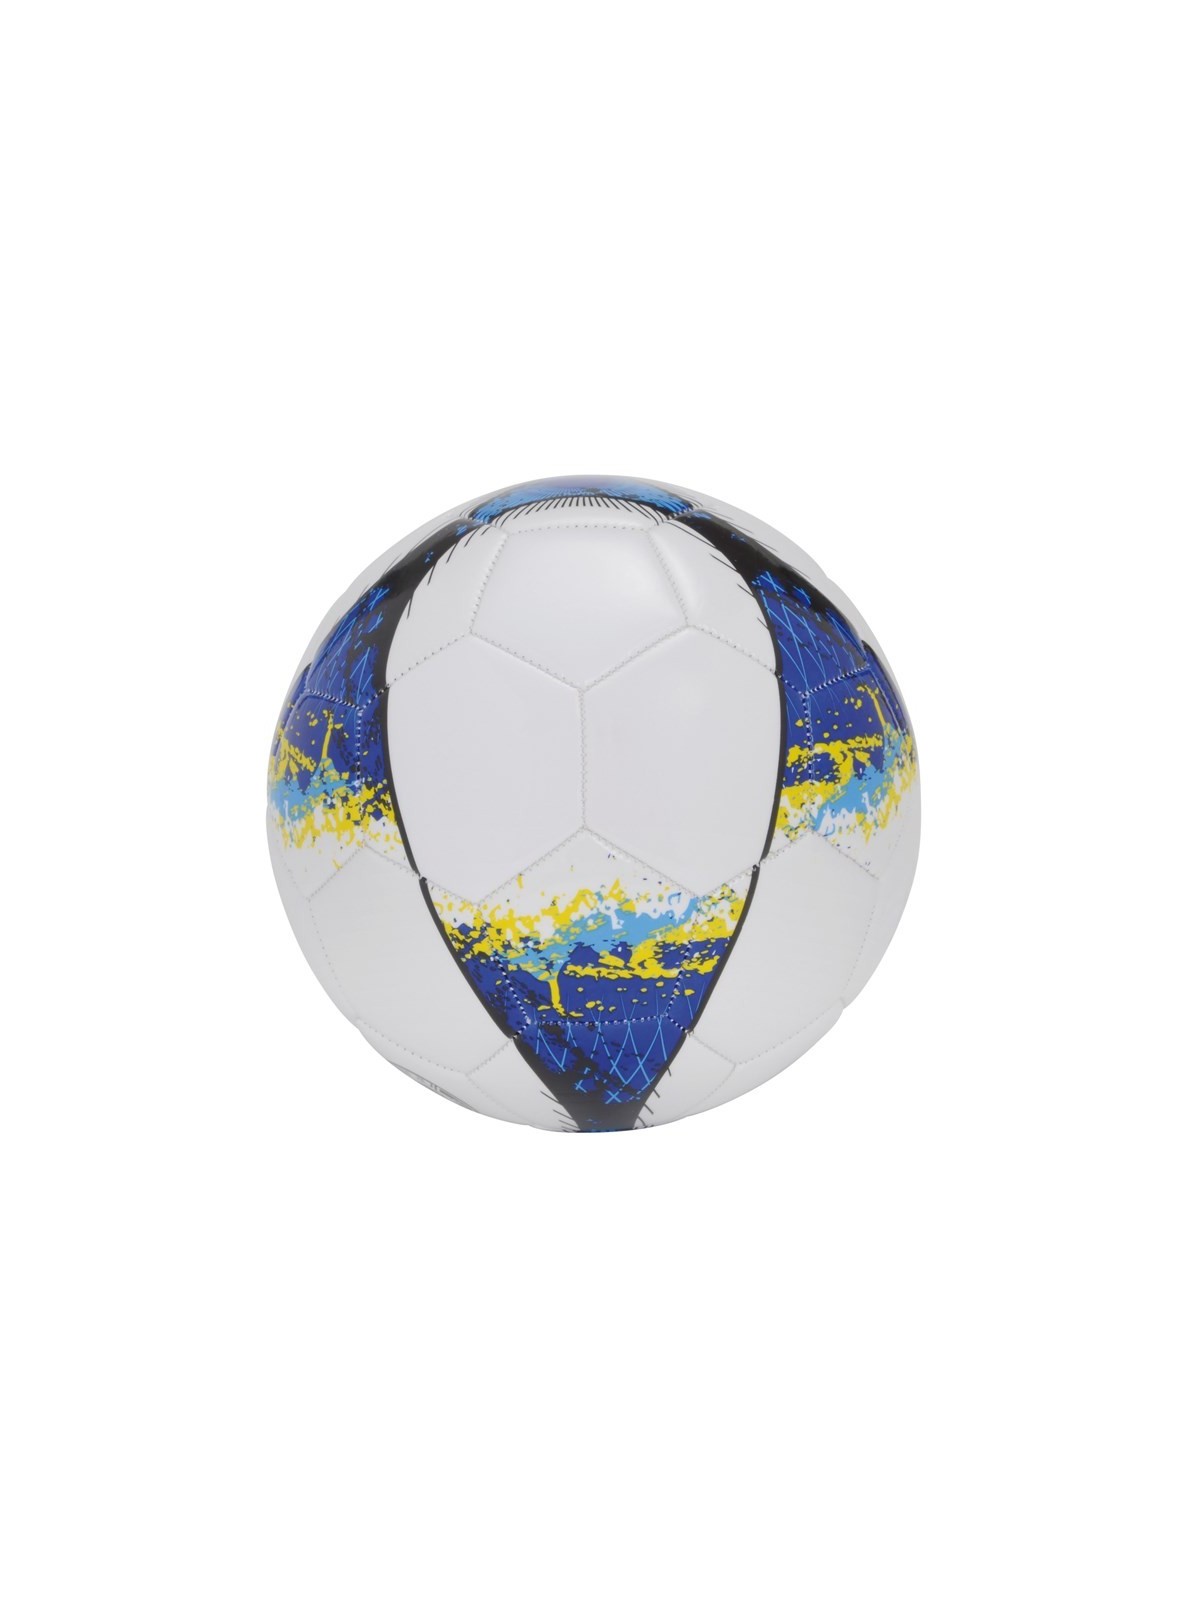 34-688 Ballon de football Cup personnalisé